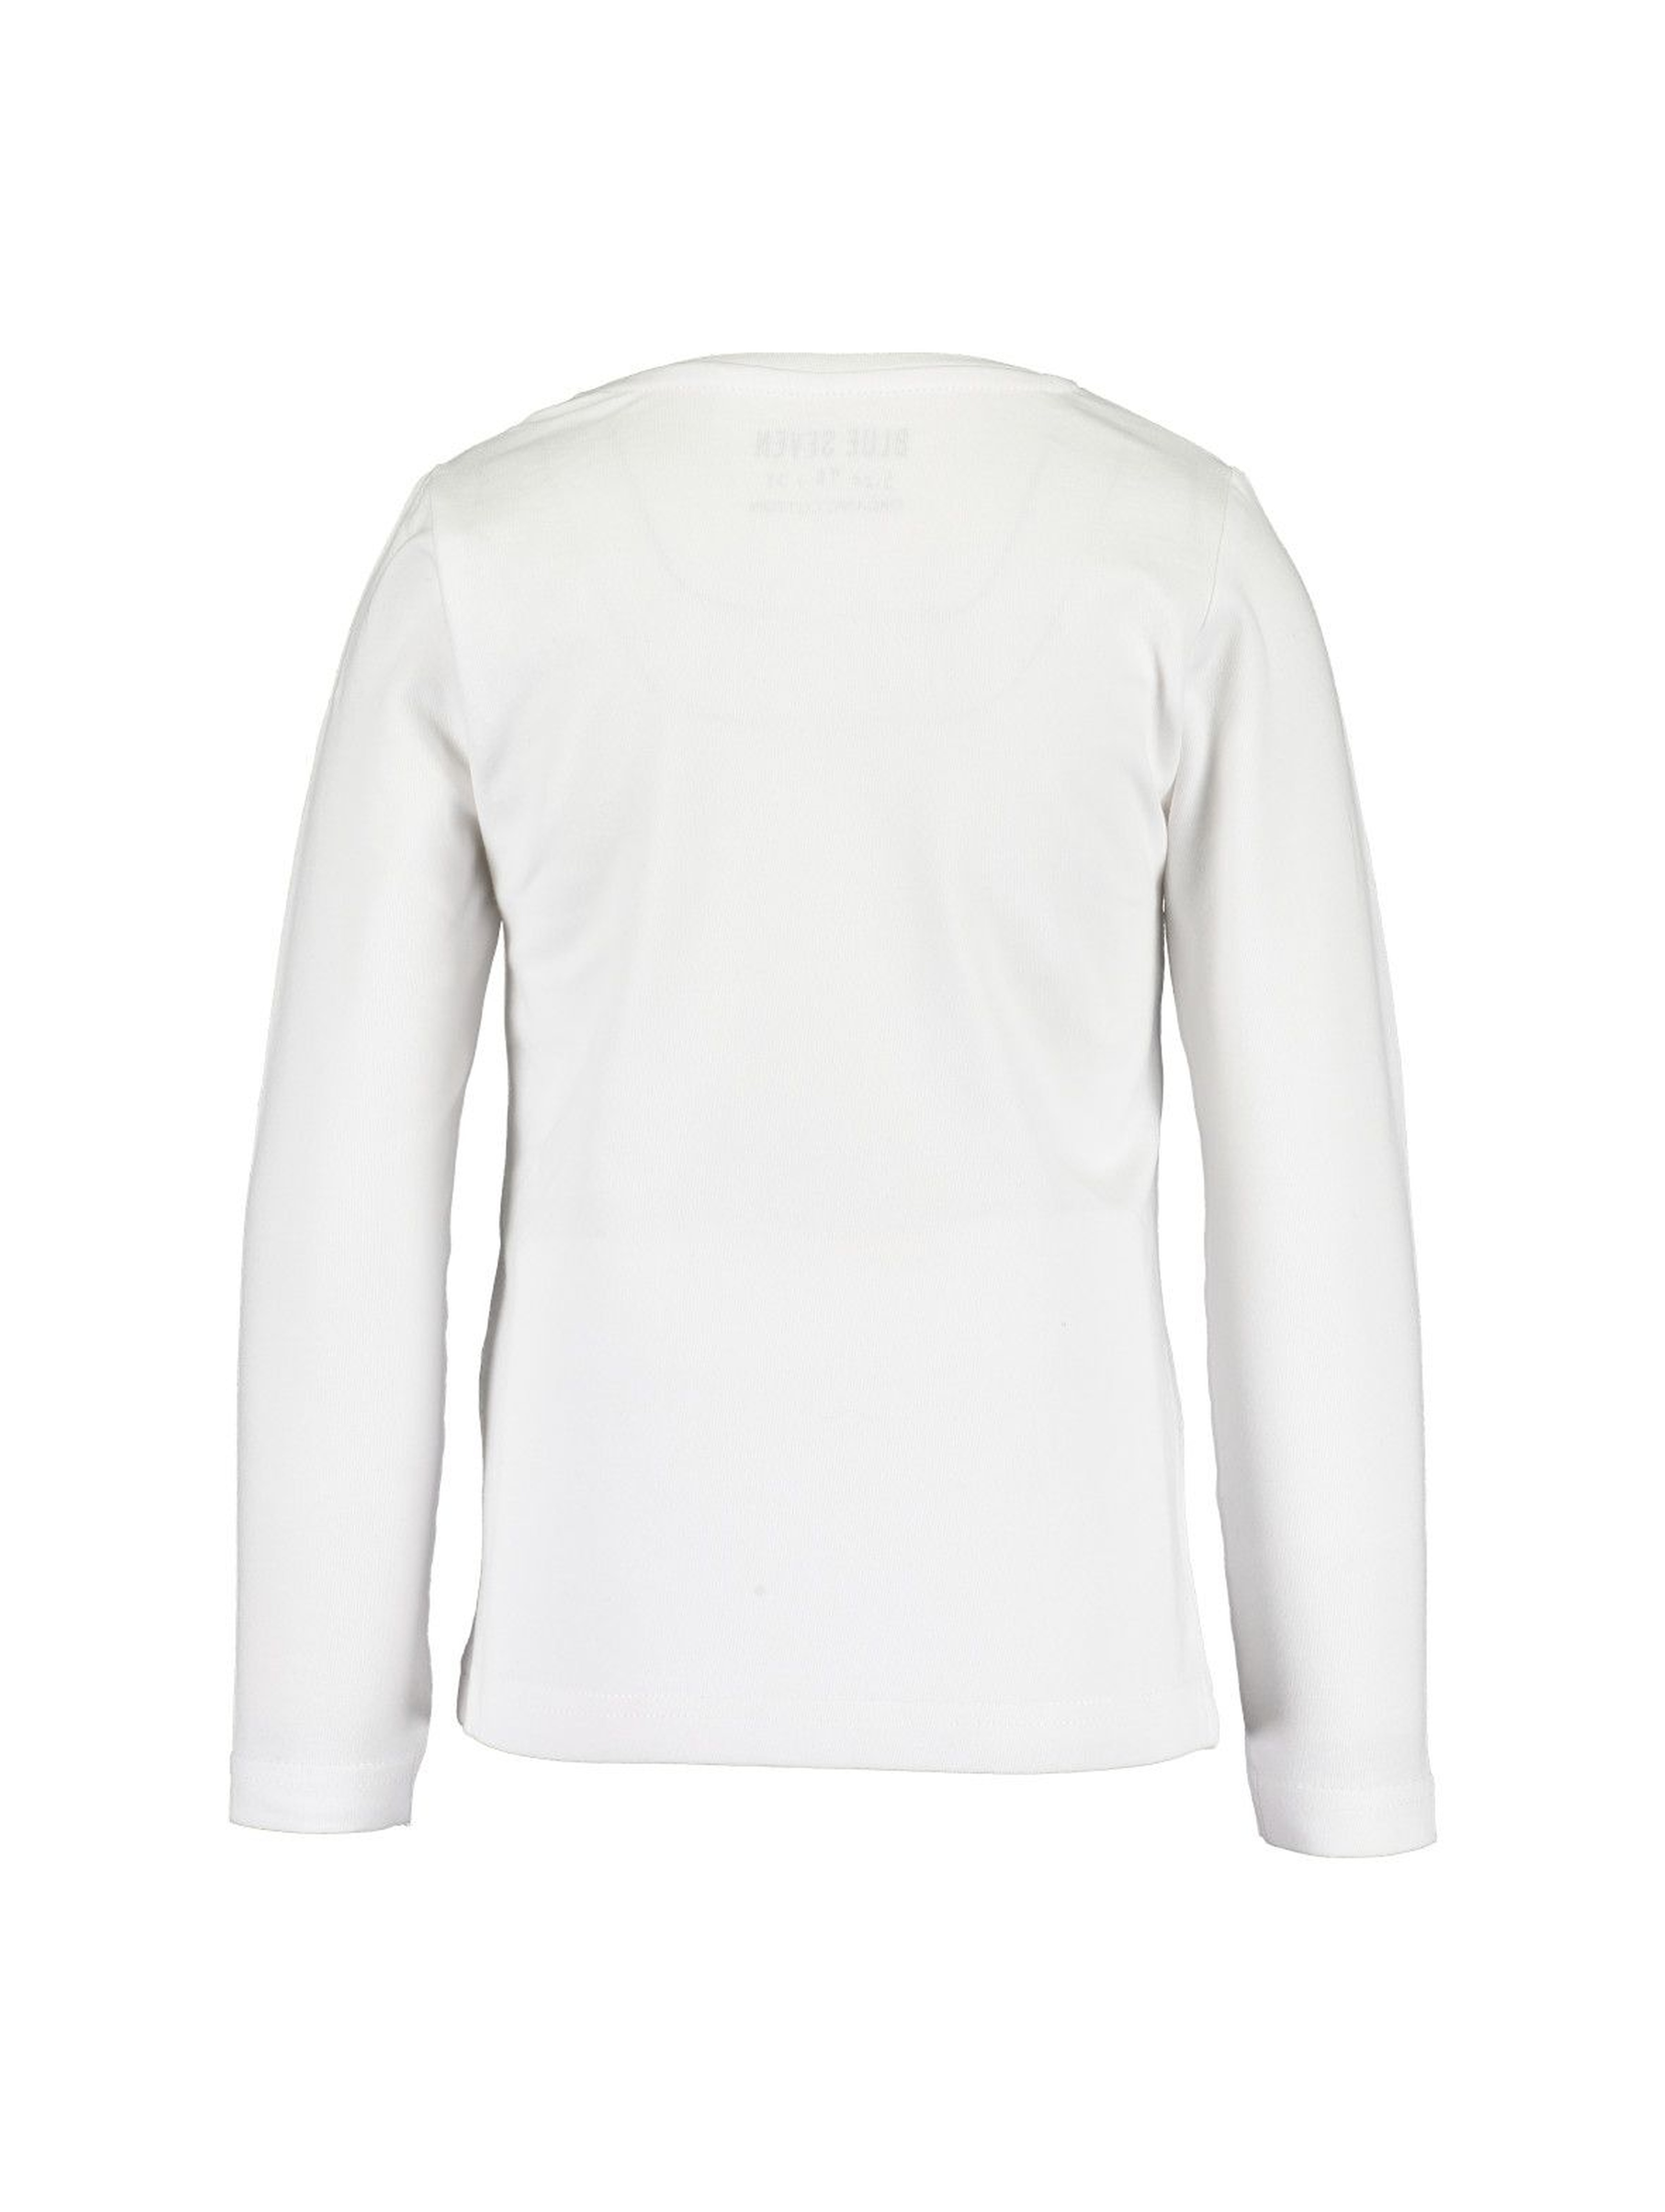 Biała bawełniana bluzka z kolorowym nadrukiem